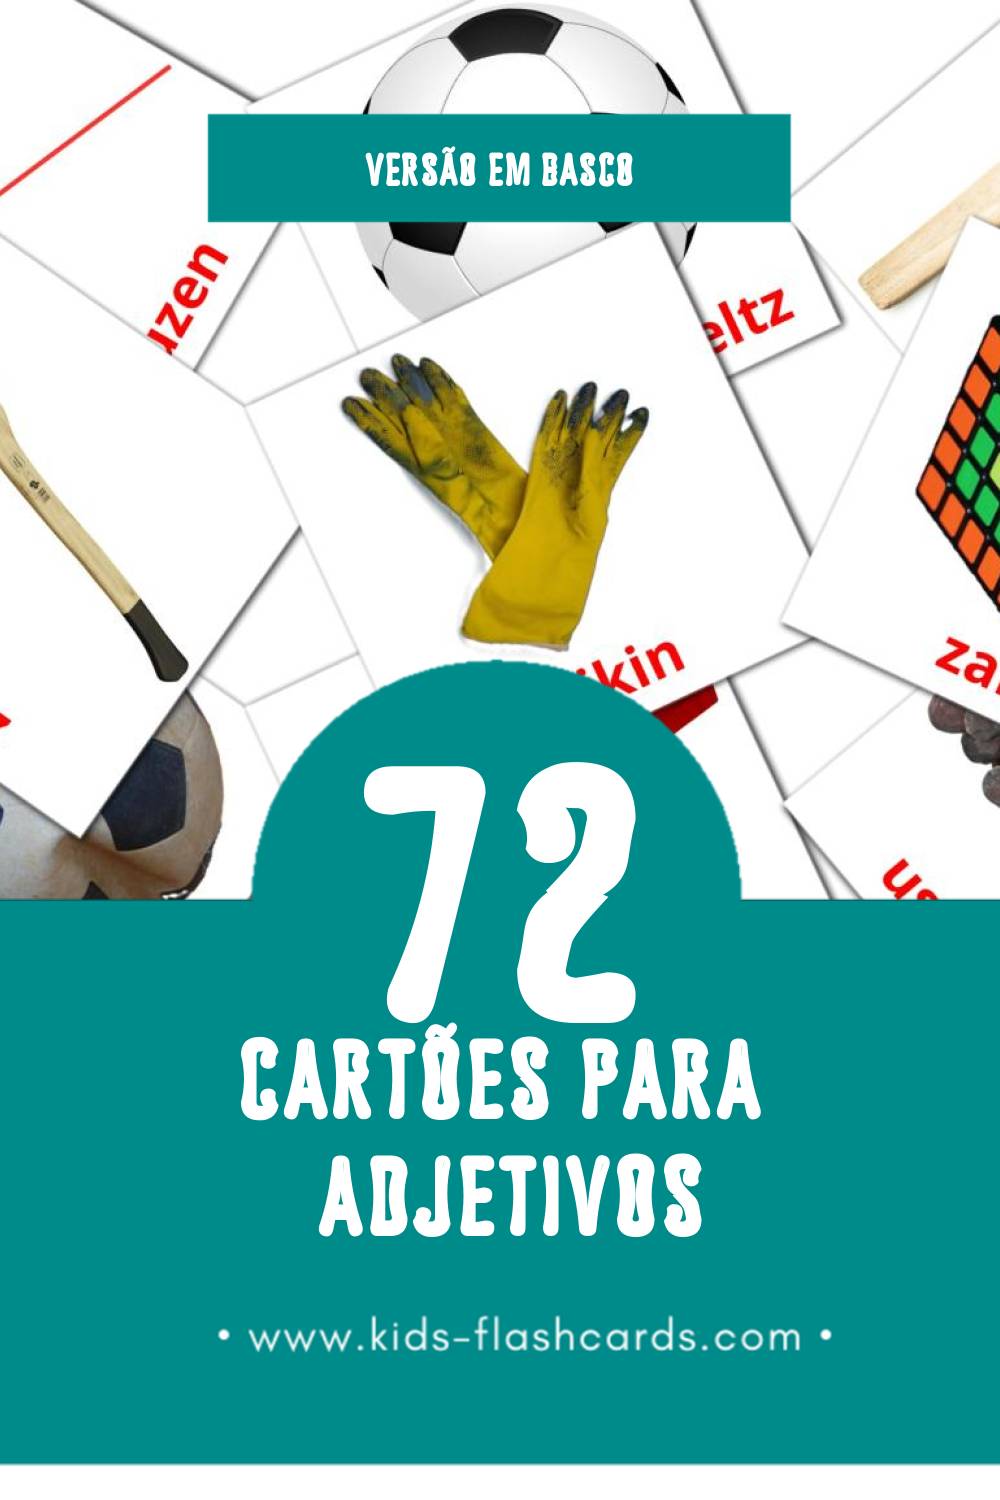 Flashcards de Adjektiboak Visuais para Toddlers (72 cartões em Basco)